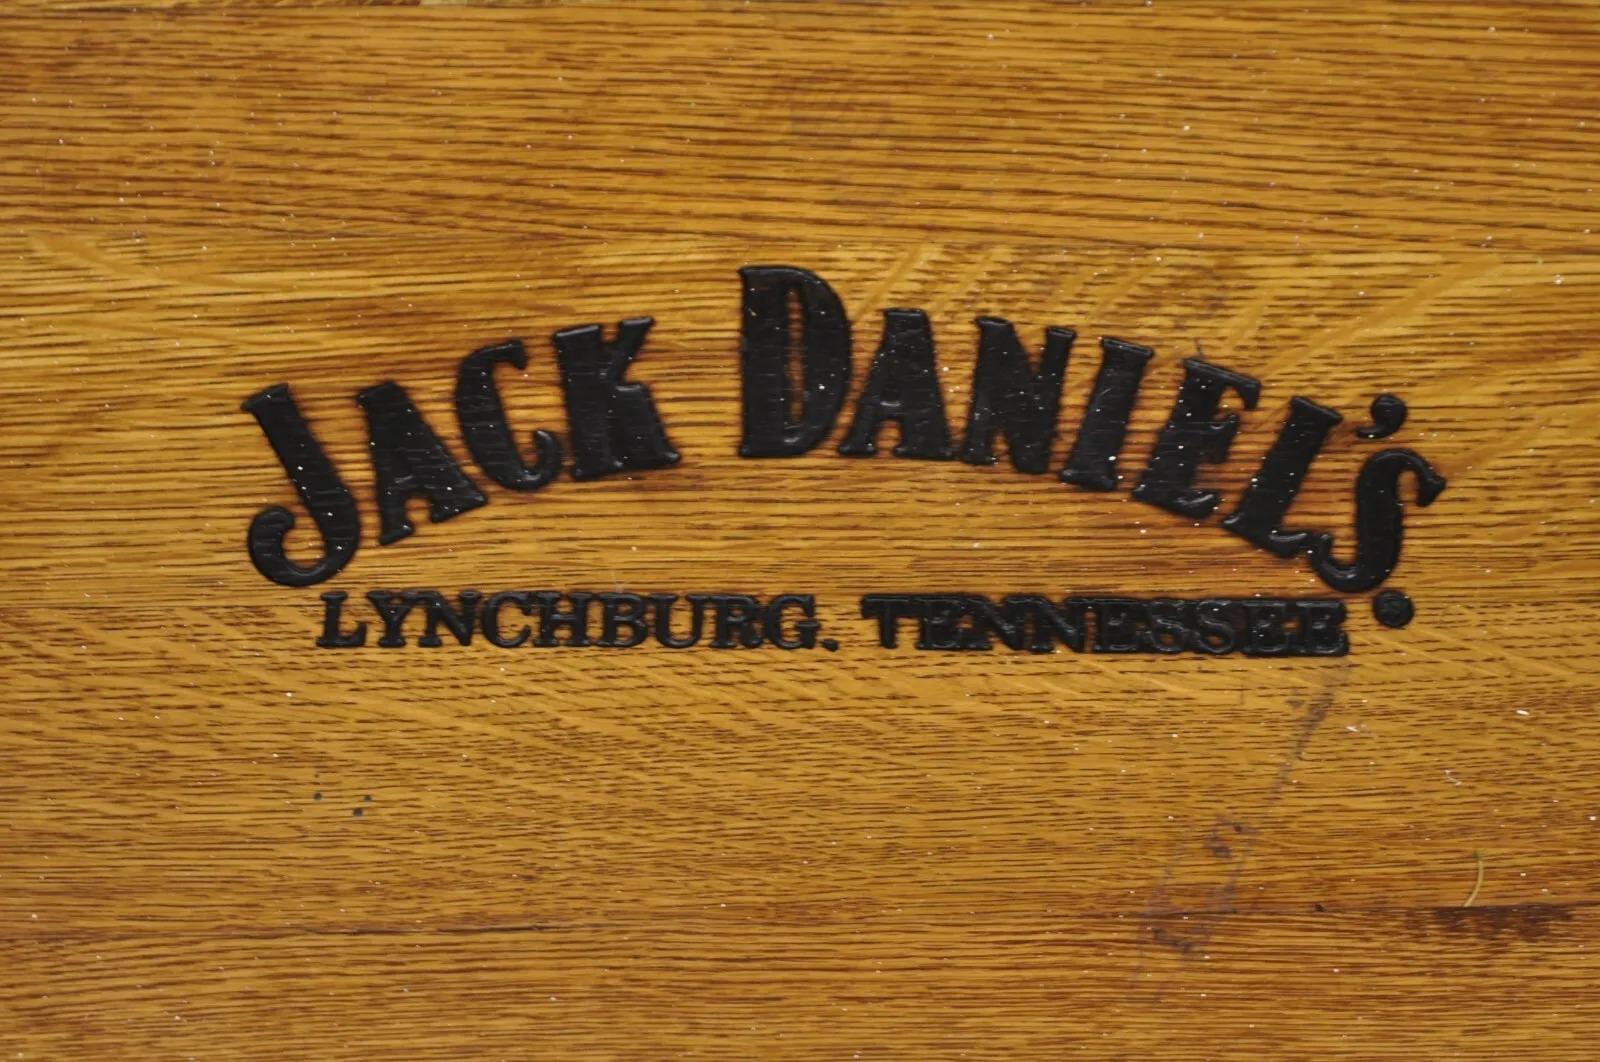 Jack Daniels Whiskey Barrel Engraved Oak Wood Metal Bands. Item features Laser engraved 